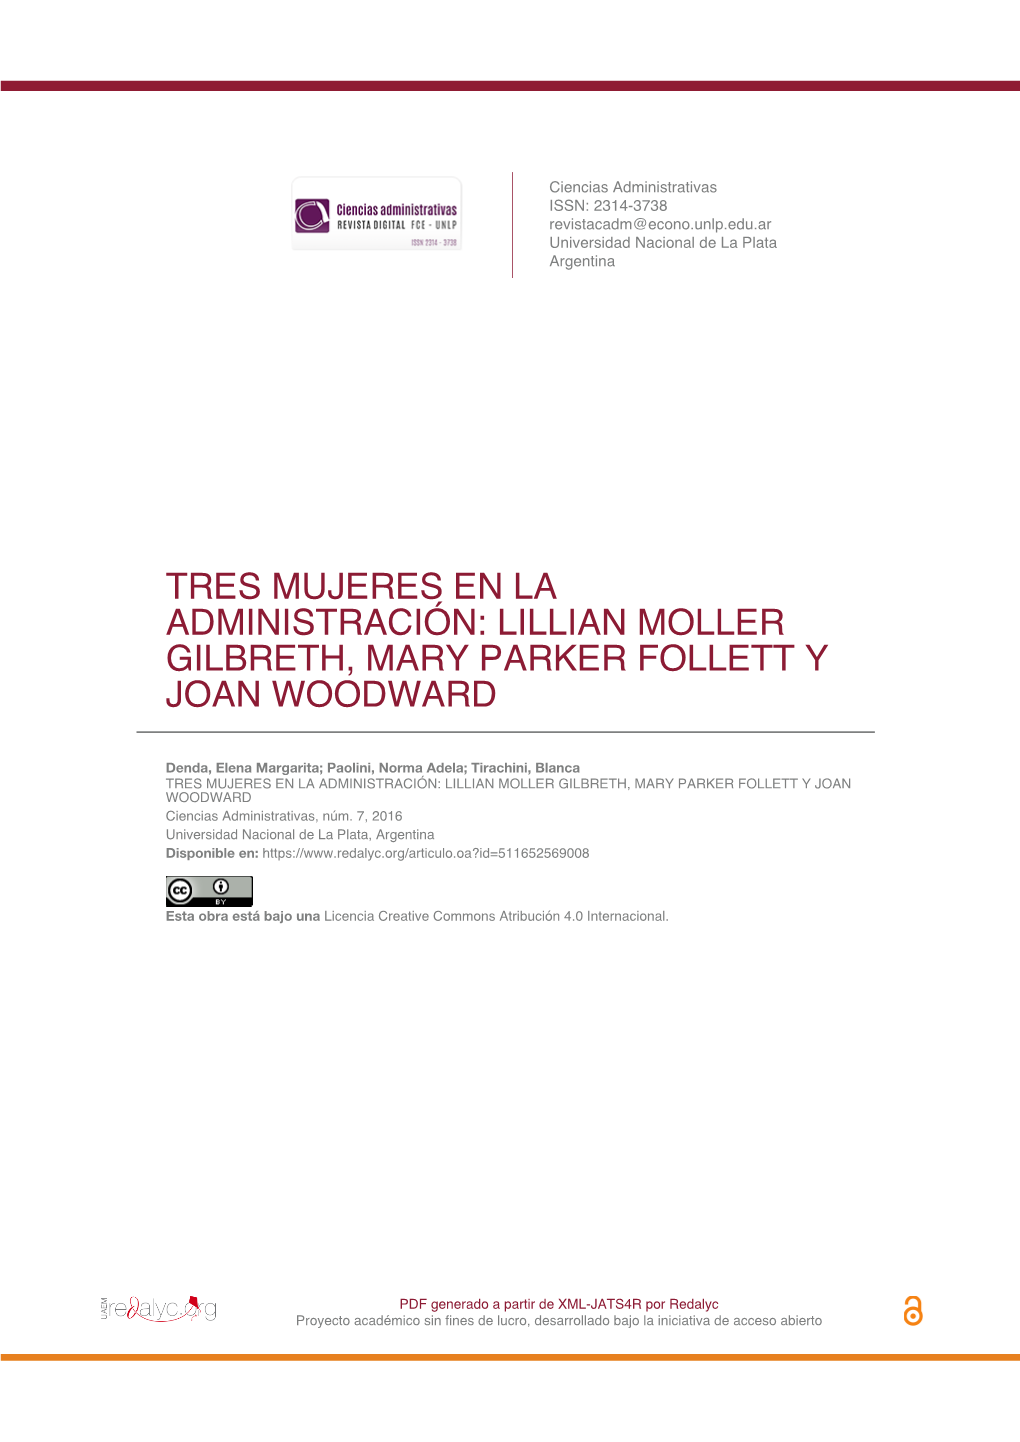 Lillian Moller Gilbreth, Mary Parker Follett Y Joan Woodward